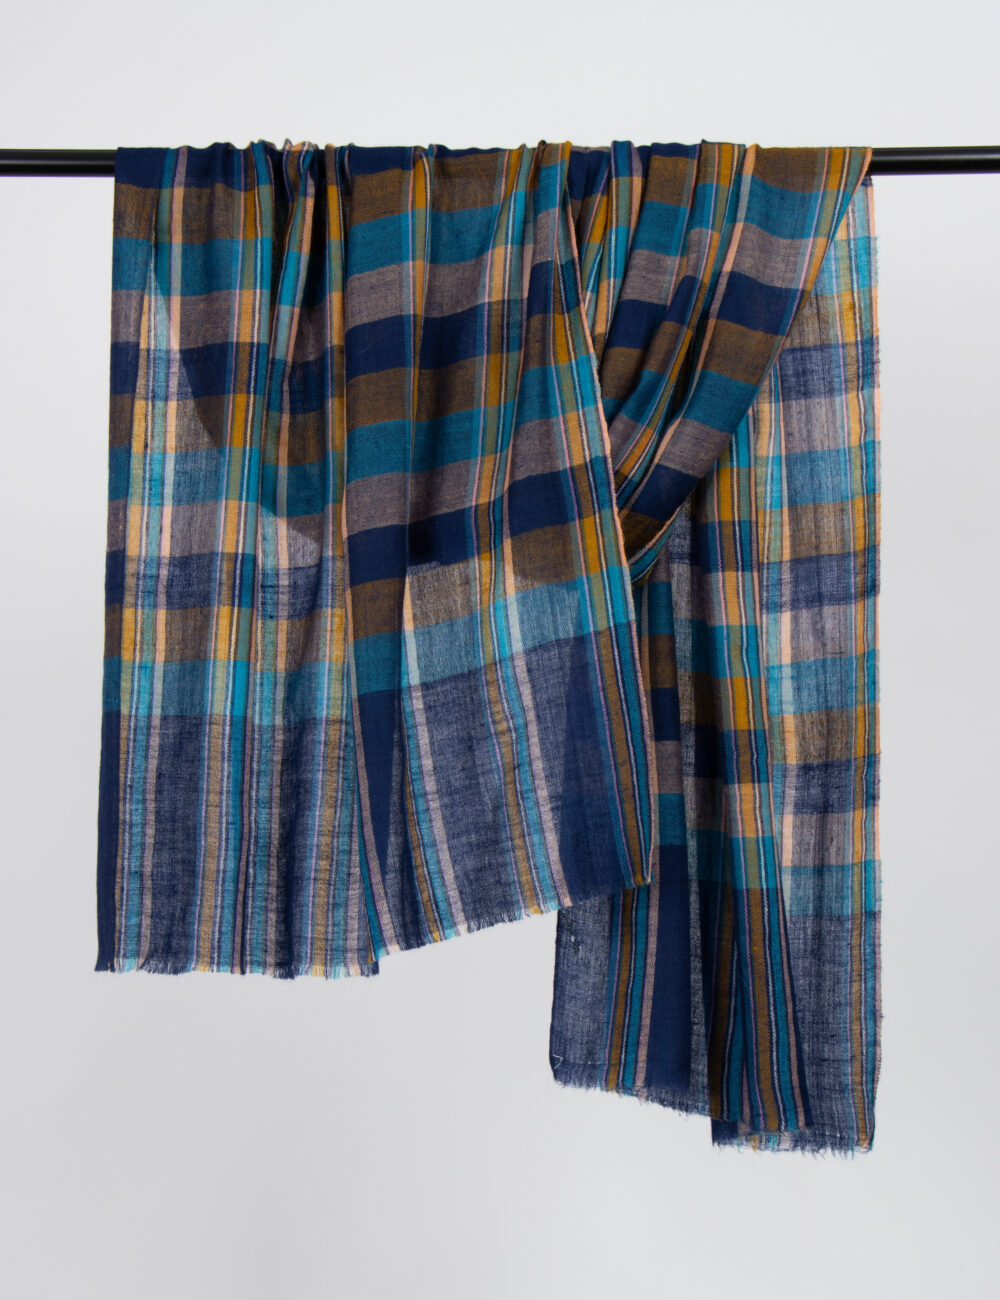 pashmina-shawls-in-chandni-chowk